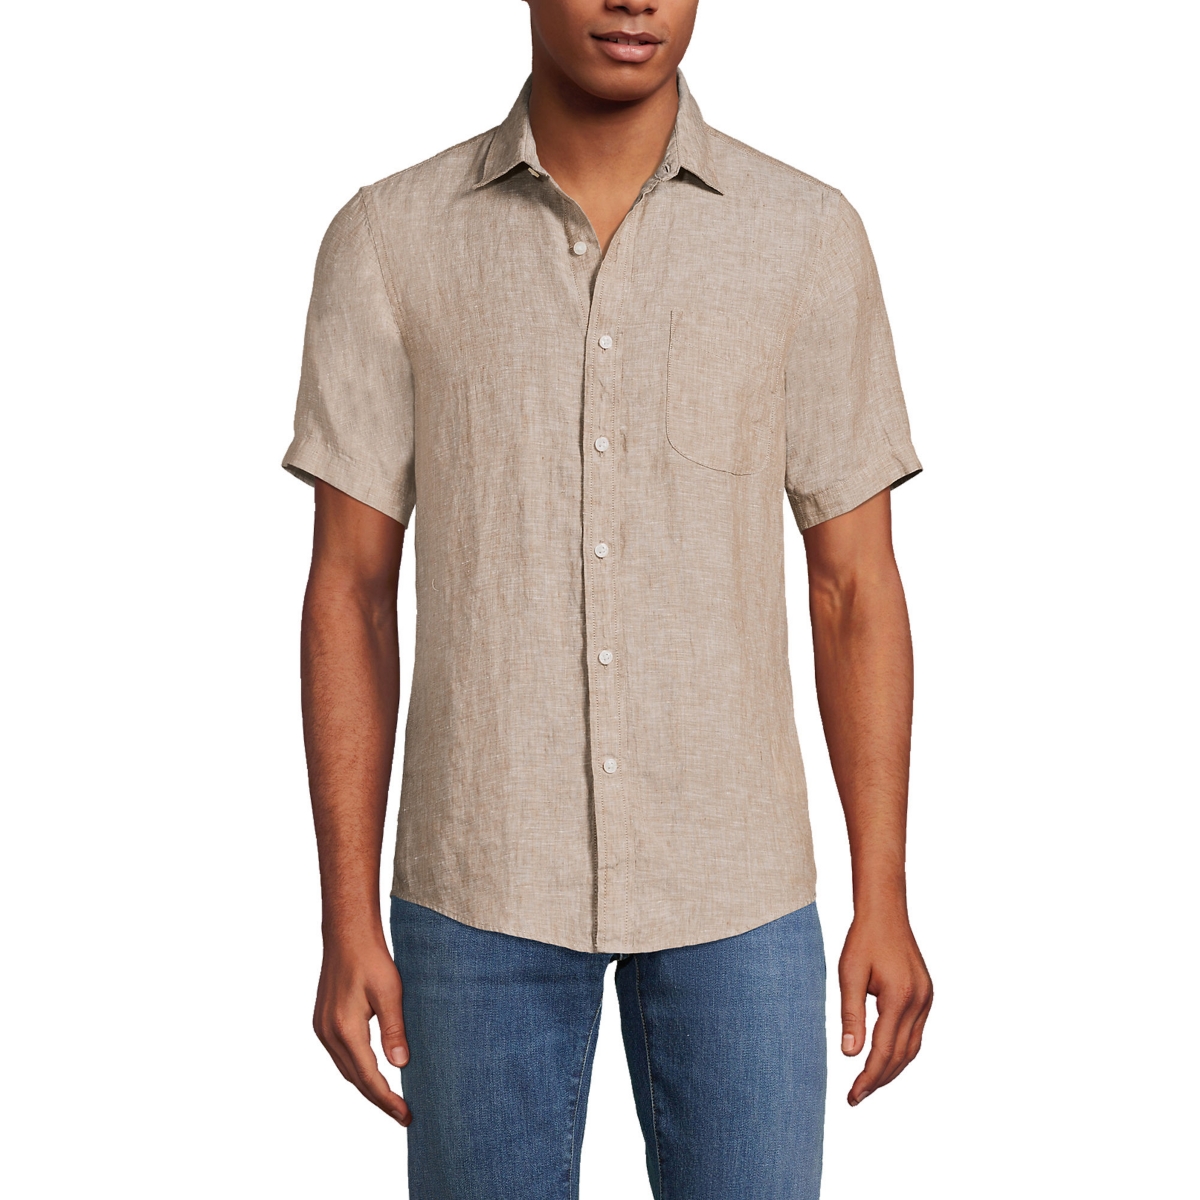 Men's Traditional Fit Short Sleeve Linen Shirt - Rich camel